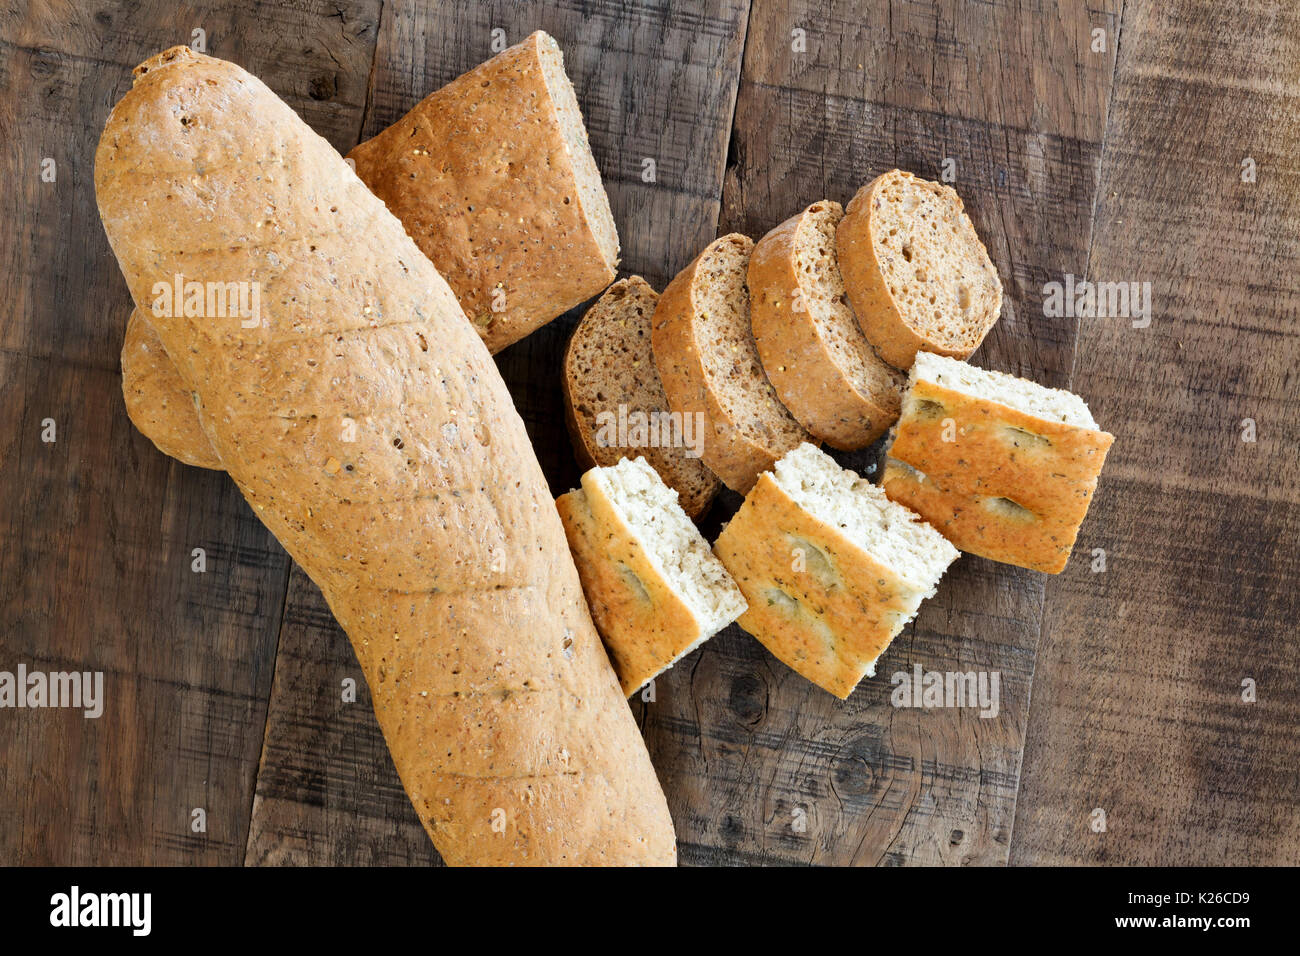 Bread rolls on a bread board Stock Photo